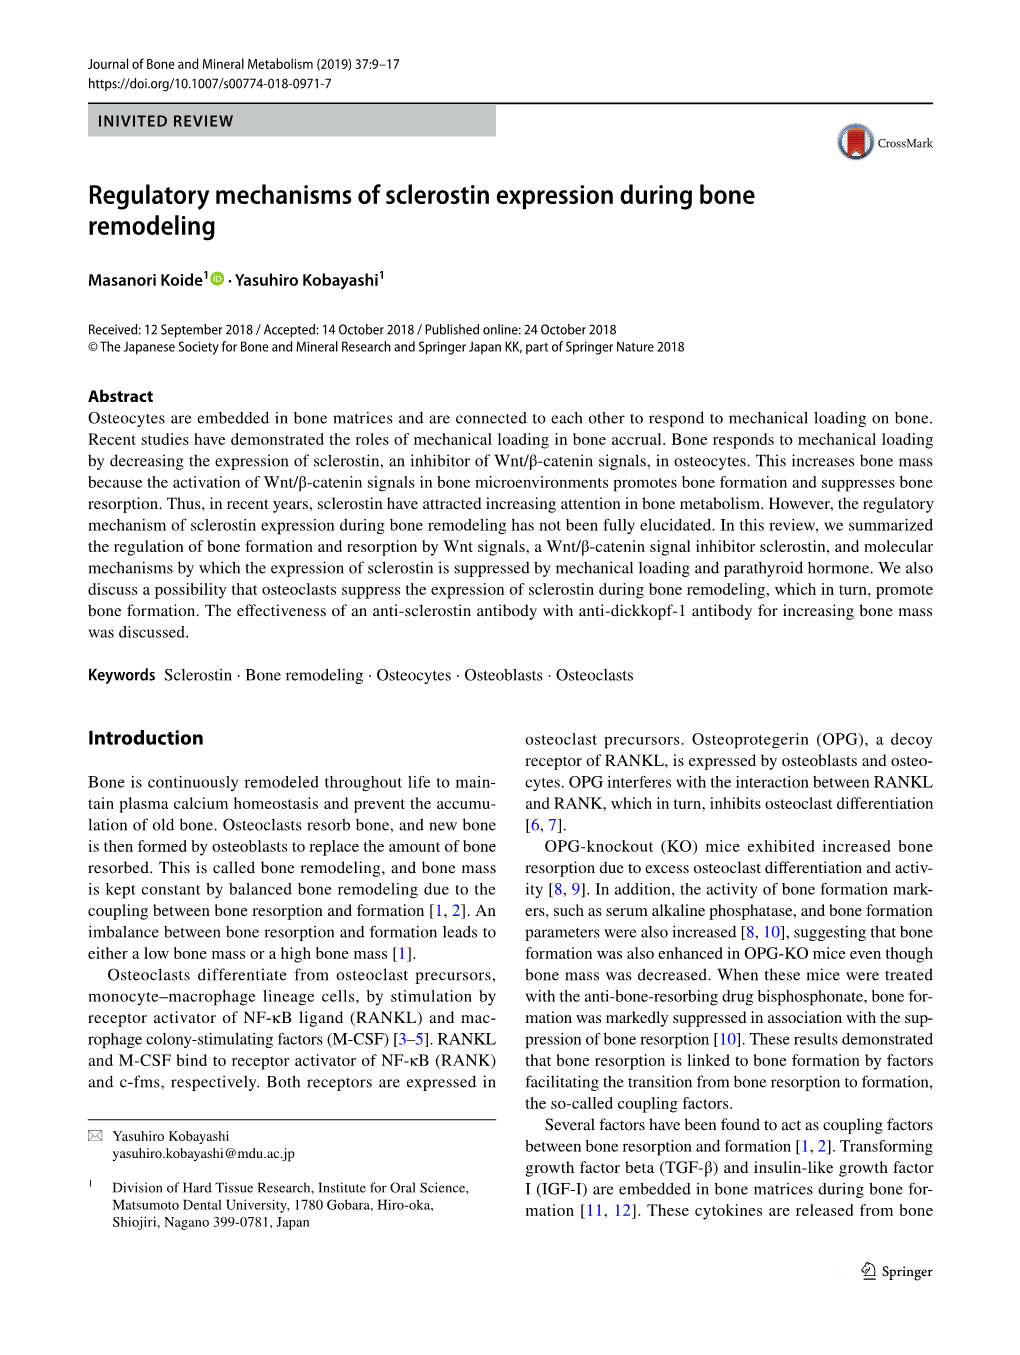 Regulatory Mechanisms of Sclerostin Expression During Bone Remodeling